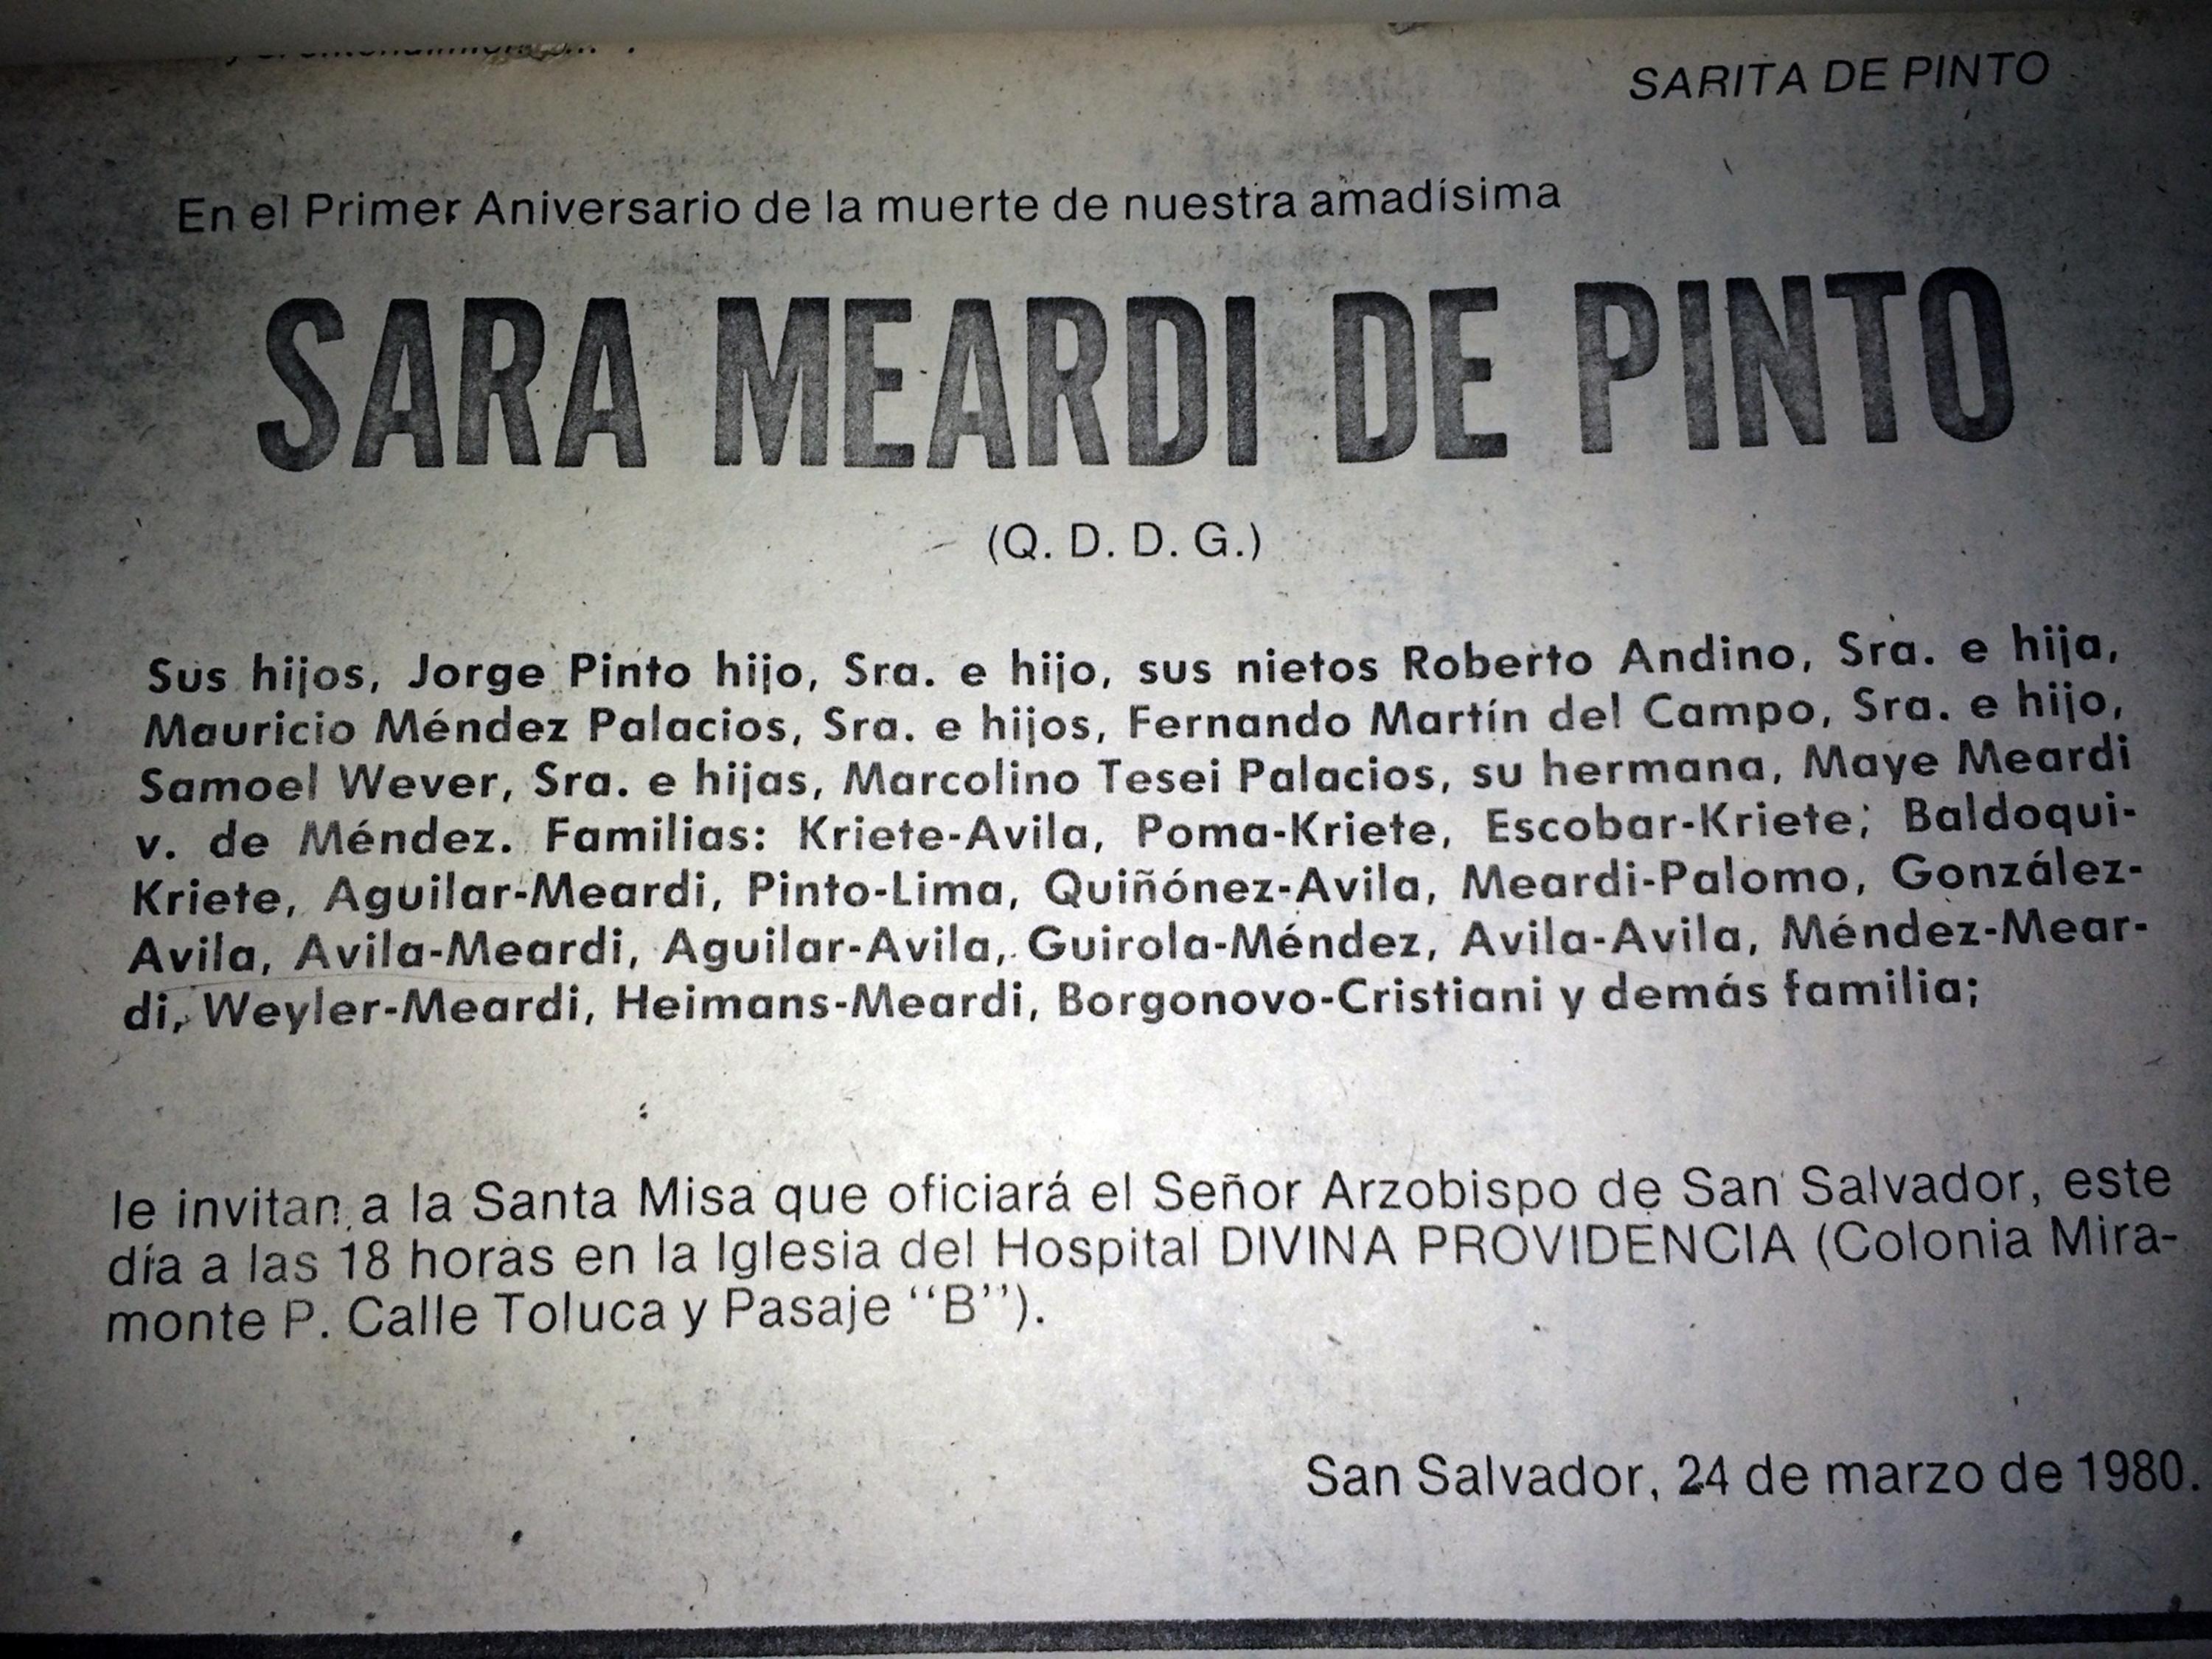 Notice published in La Prensa Gráfica, Monday, March 24, 1980, the day Monsignor Romero was assassinated. Photo: Archivo El Faro.